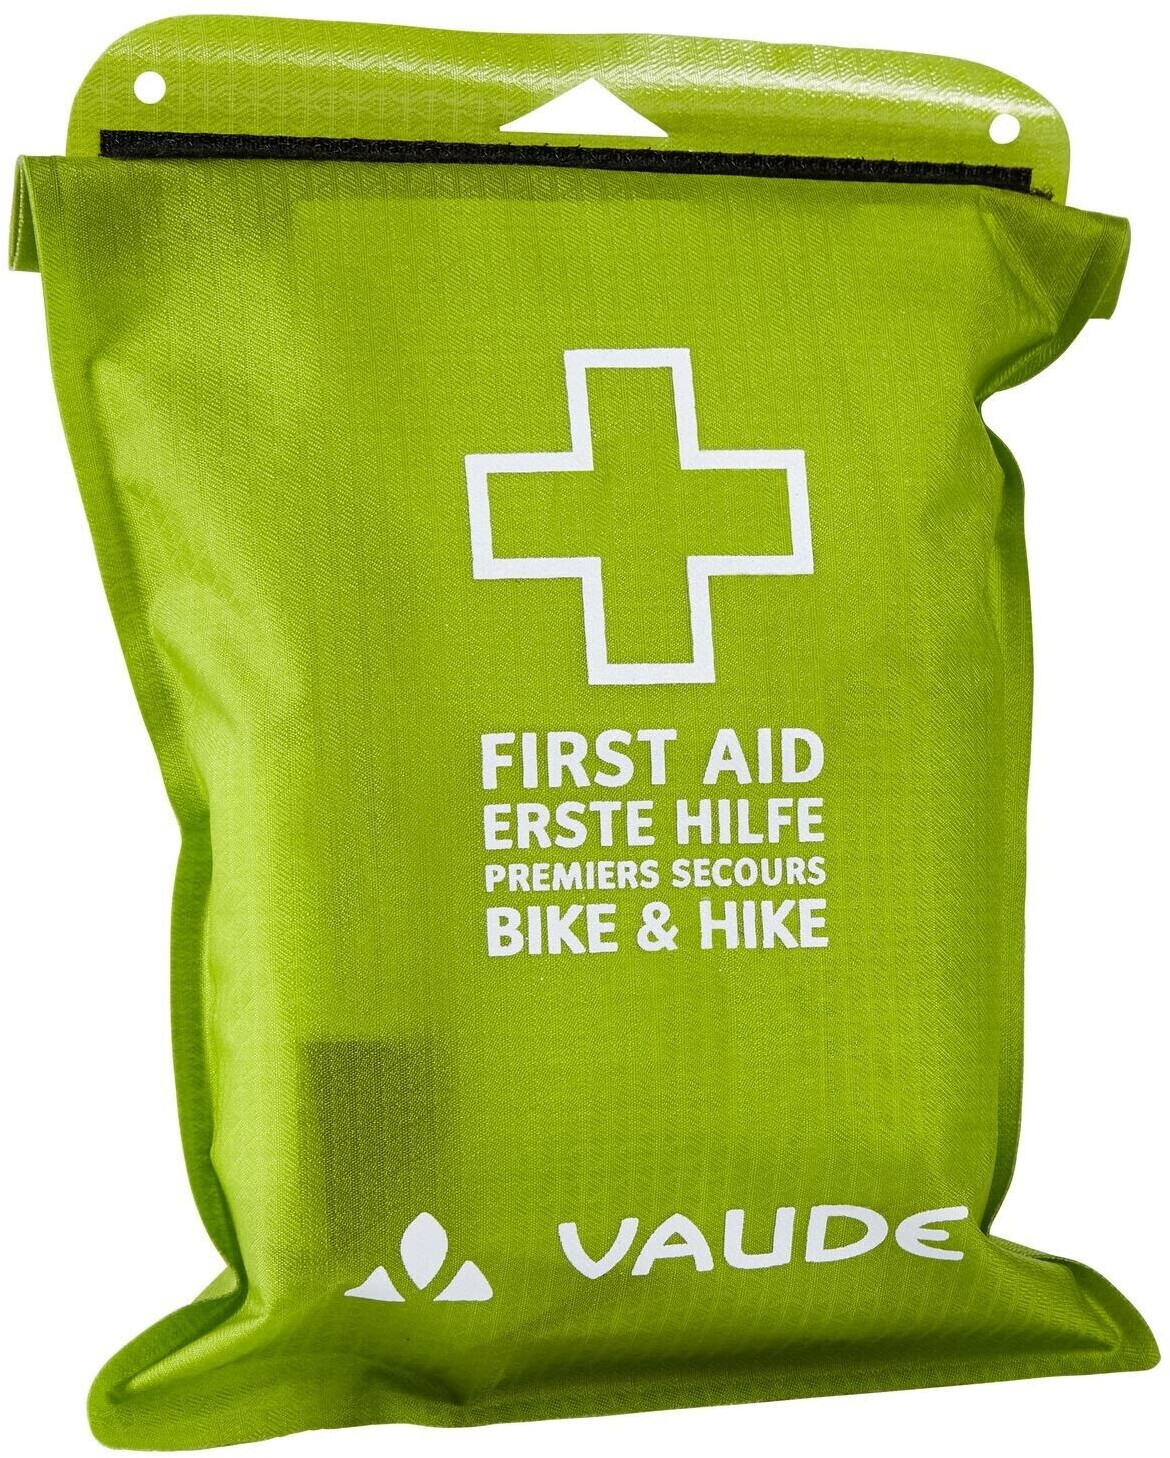 VAUDE Bike & Hide Erste-Hilfe Set Waterdicht ab 25,00 €